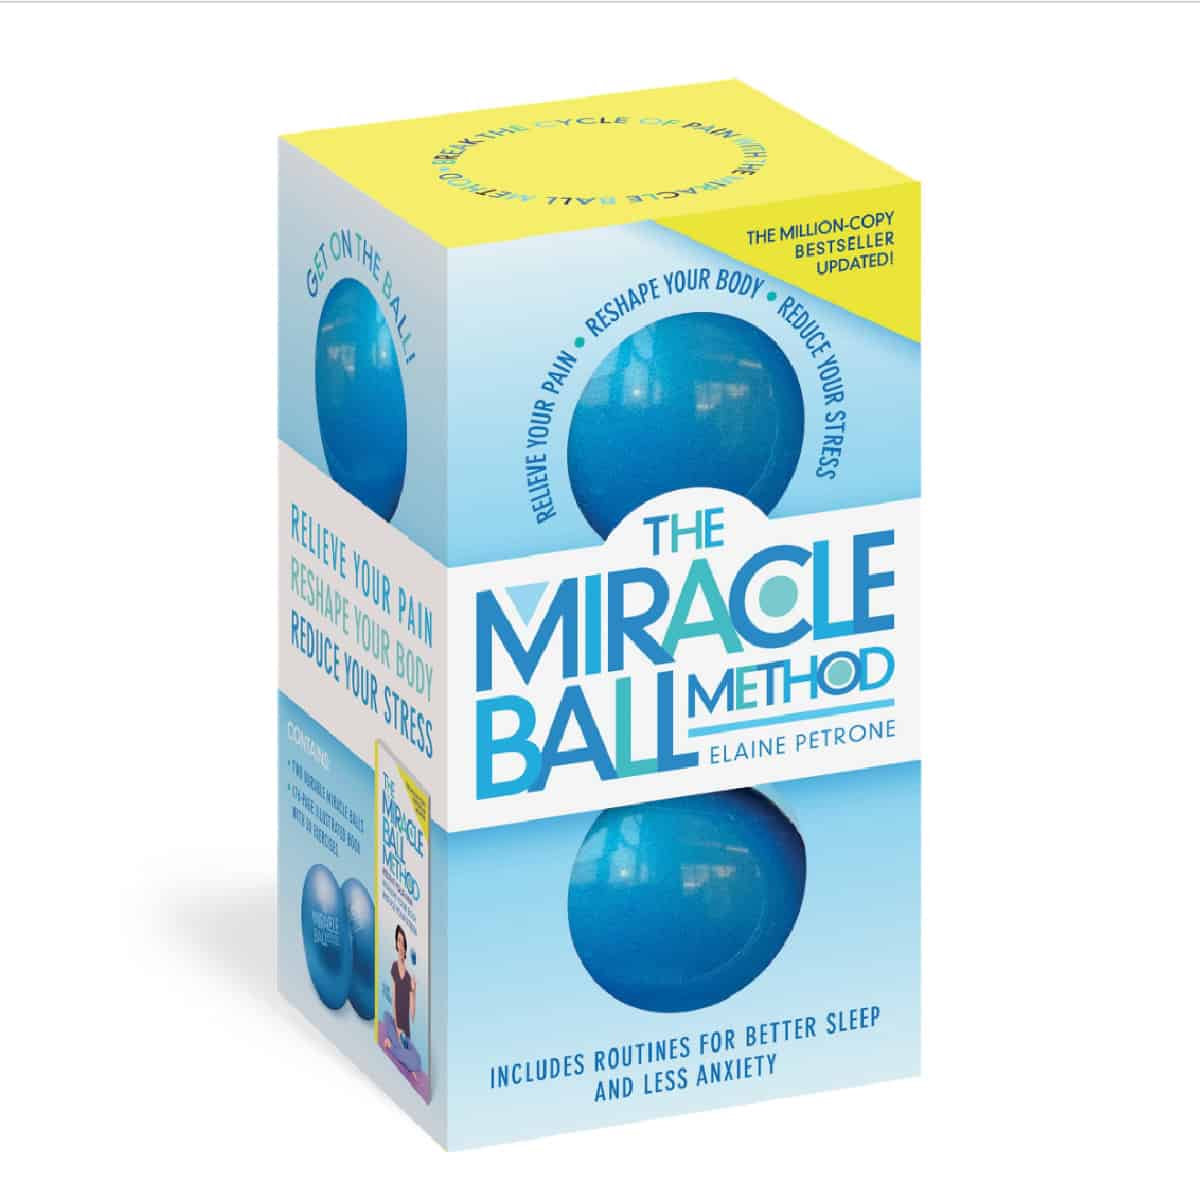 Miracle ball method kit.